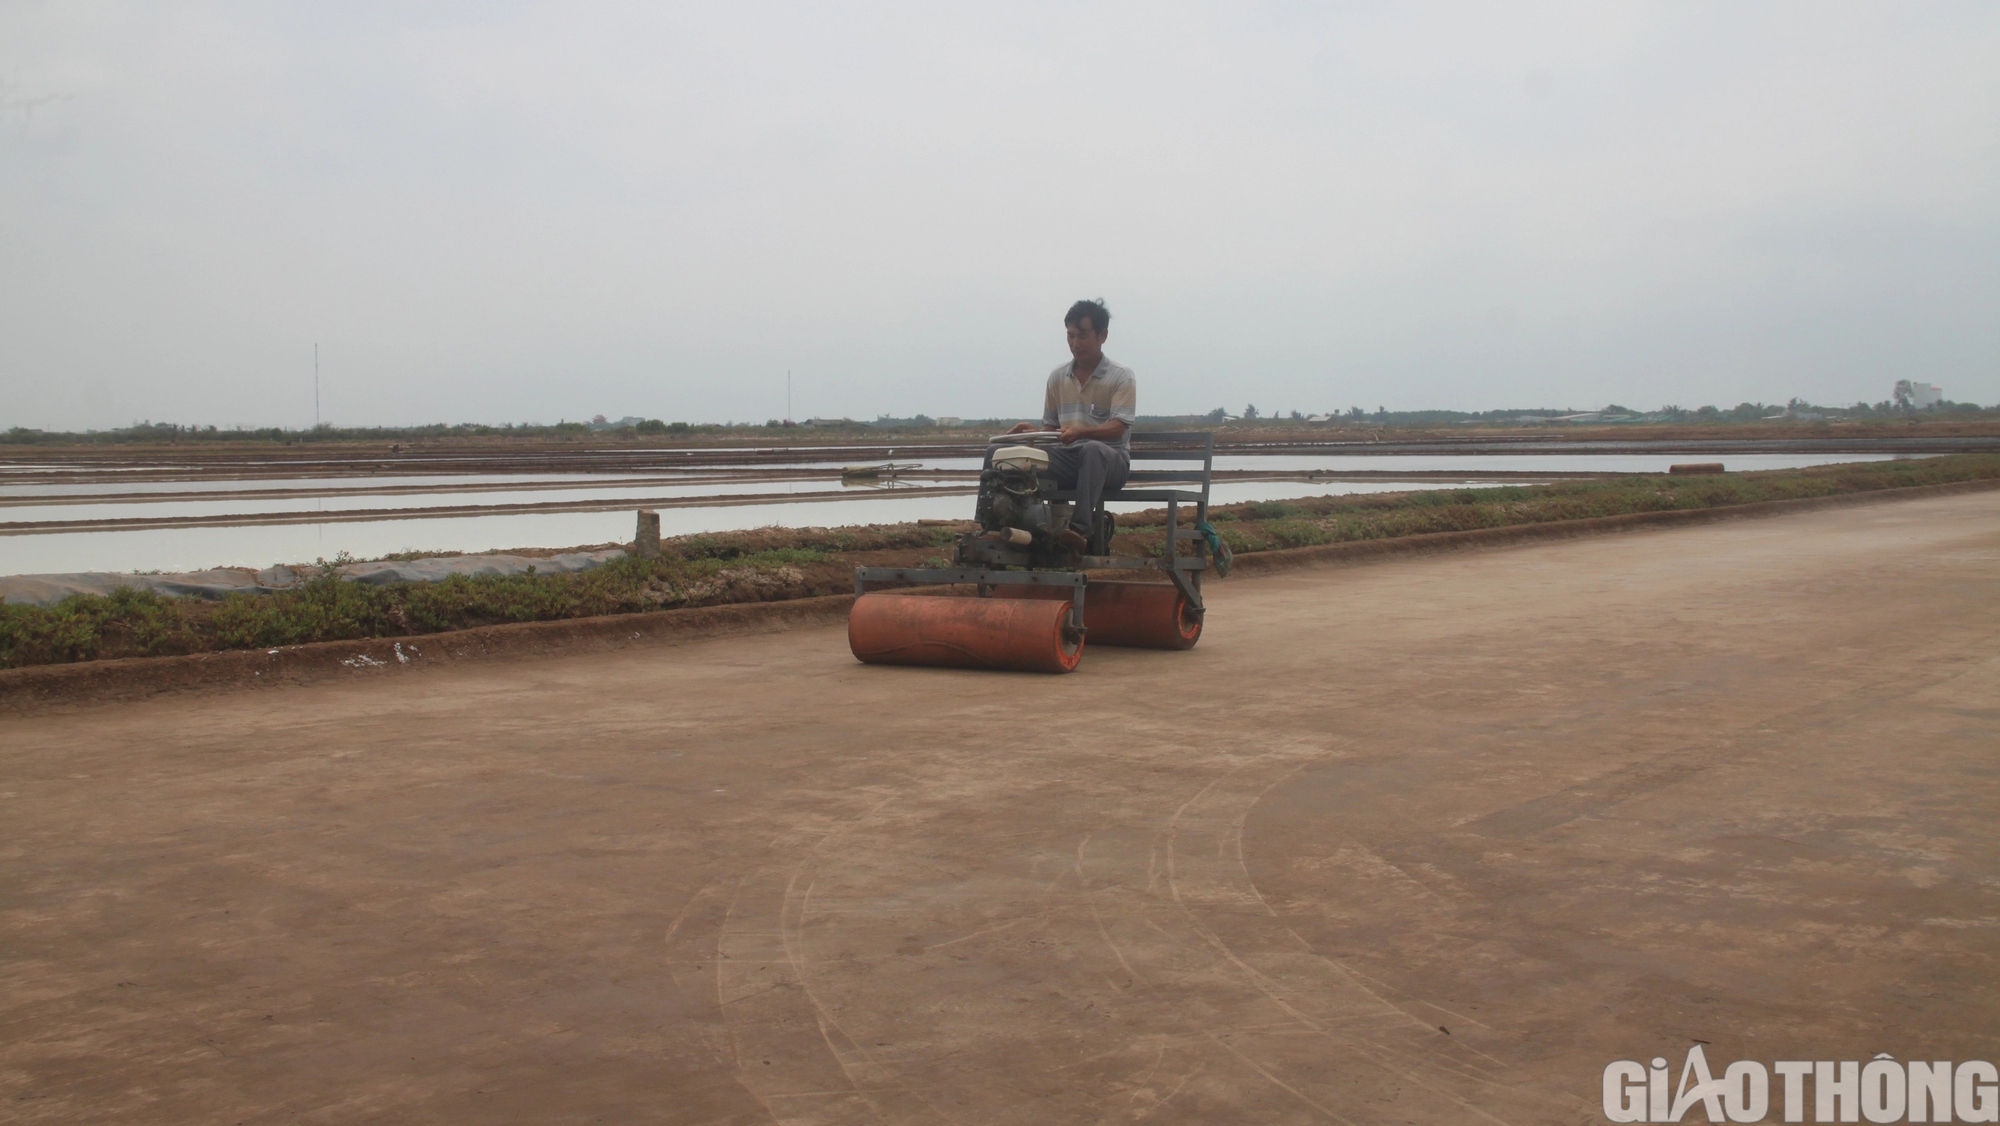 Diêm dân Bạc Liêu khấp khởi hy vọng nghề làm muối phát triển từ 100 tỷ đồng hỗ trợ- Ảnh 4.